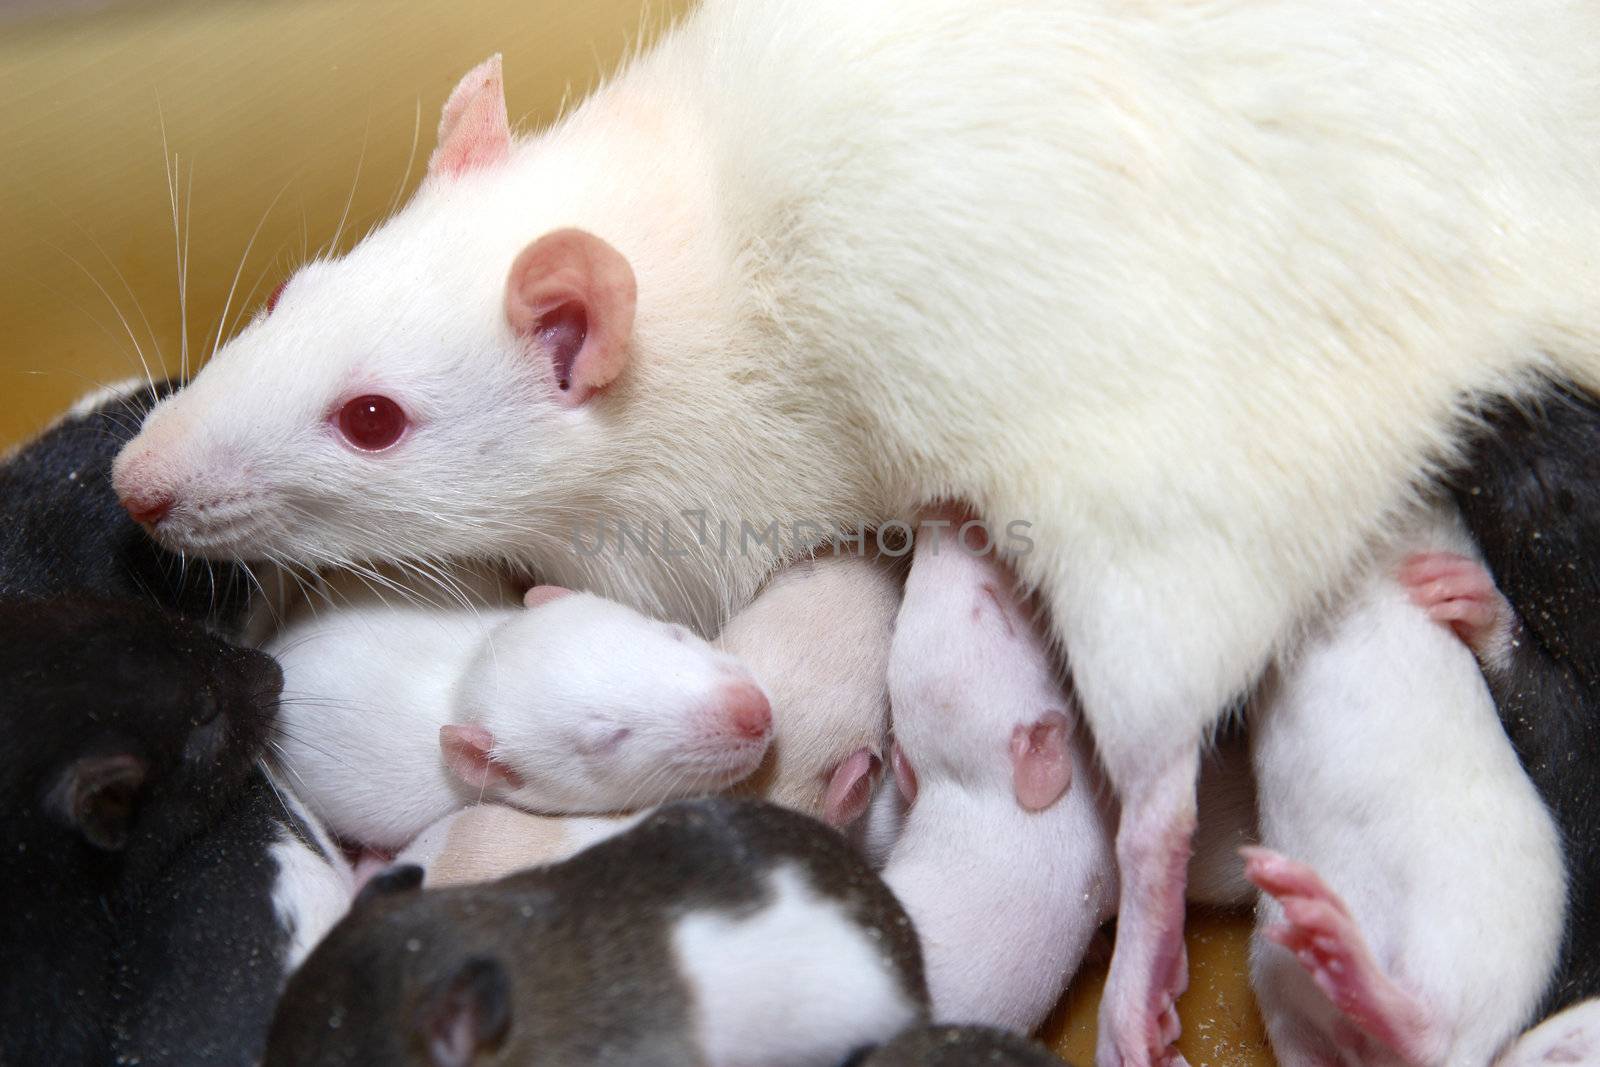 Rat family by shcheglov